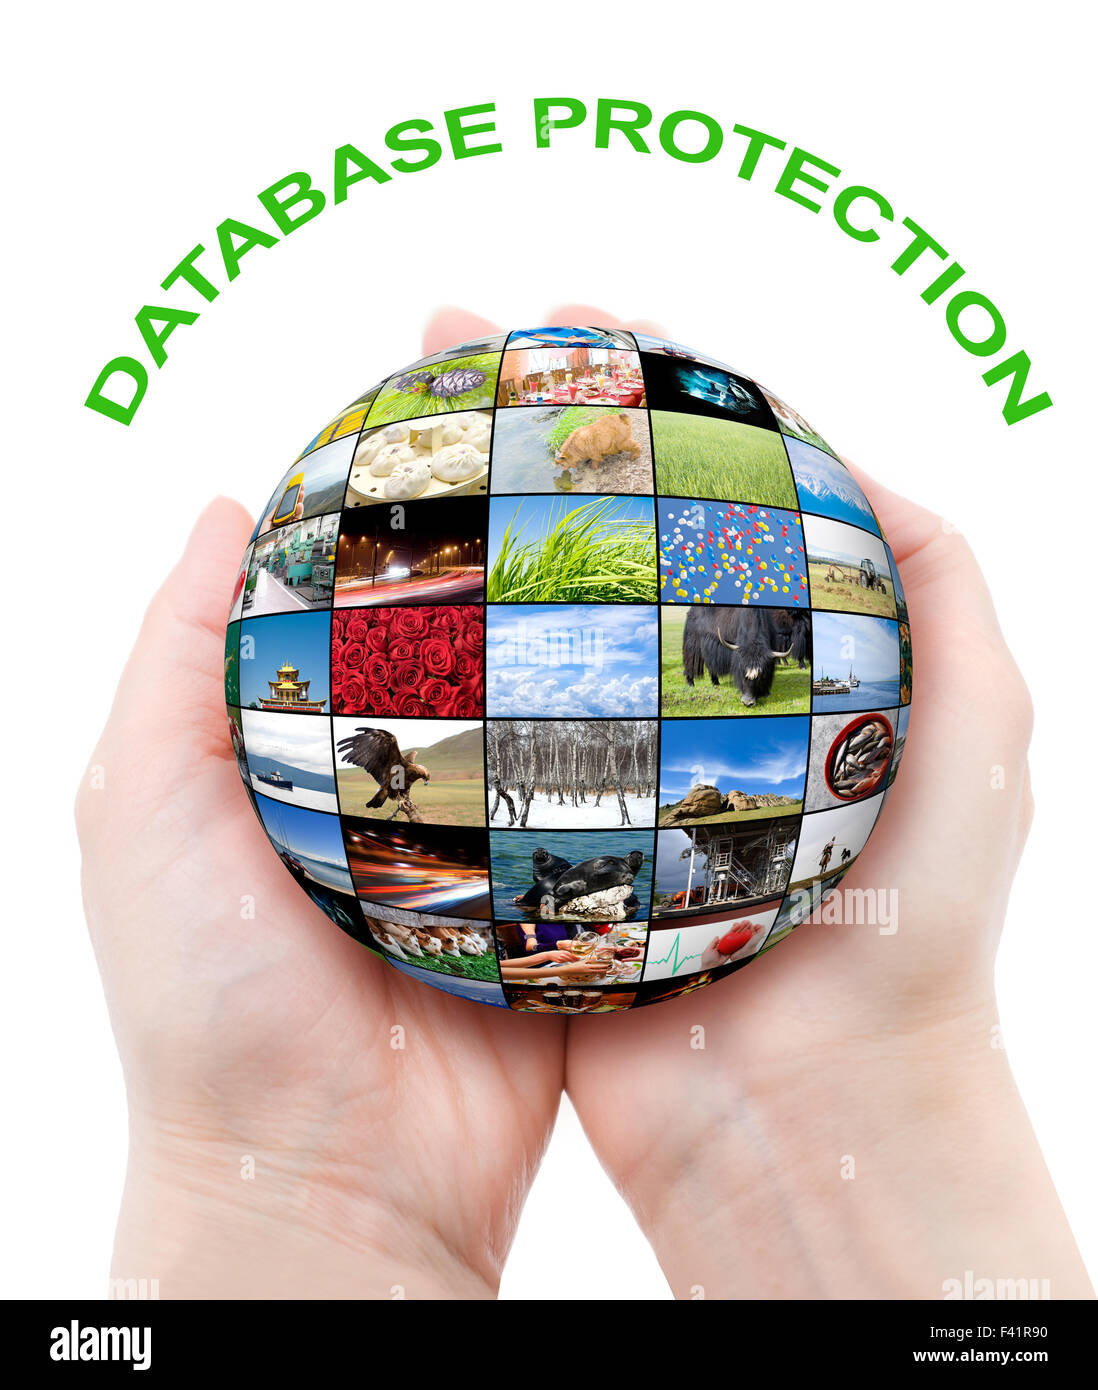 Concetto di protezione dei database Foto Stock